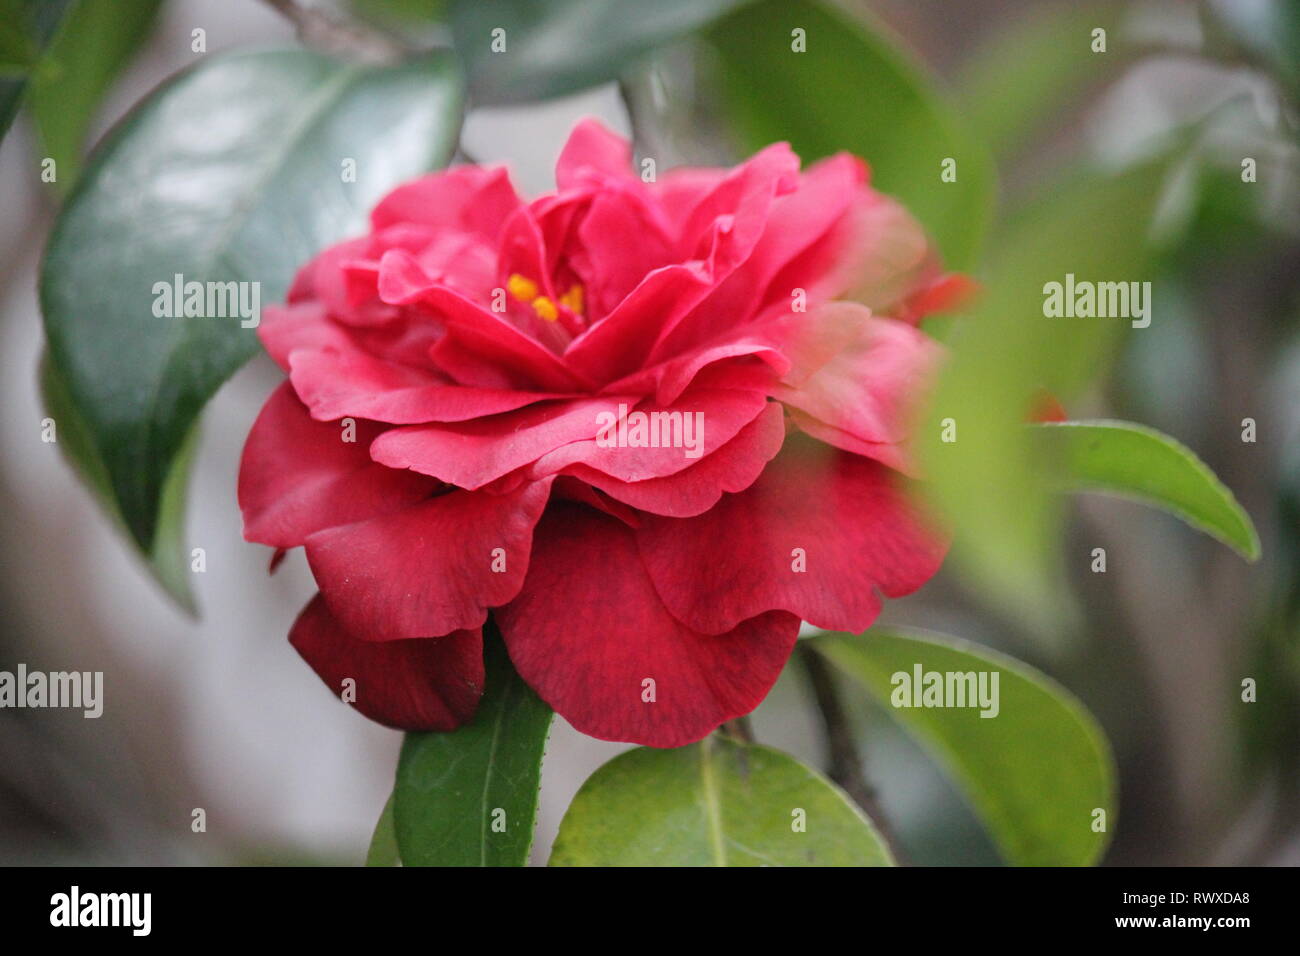 Red japanese camellia en pleine floraison, Camellia camellia commun, Japonais, Camellia japonica, ou des fleurs de tsubaki en pleine floraison. Banque D'Images